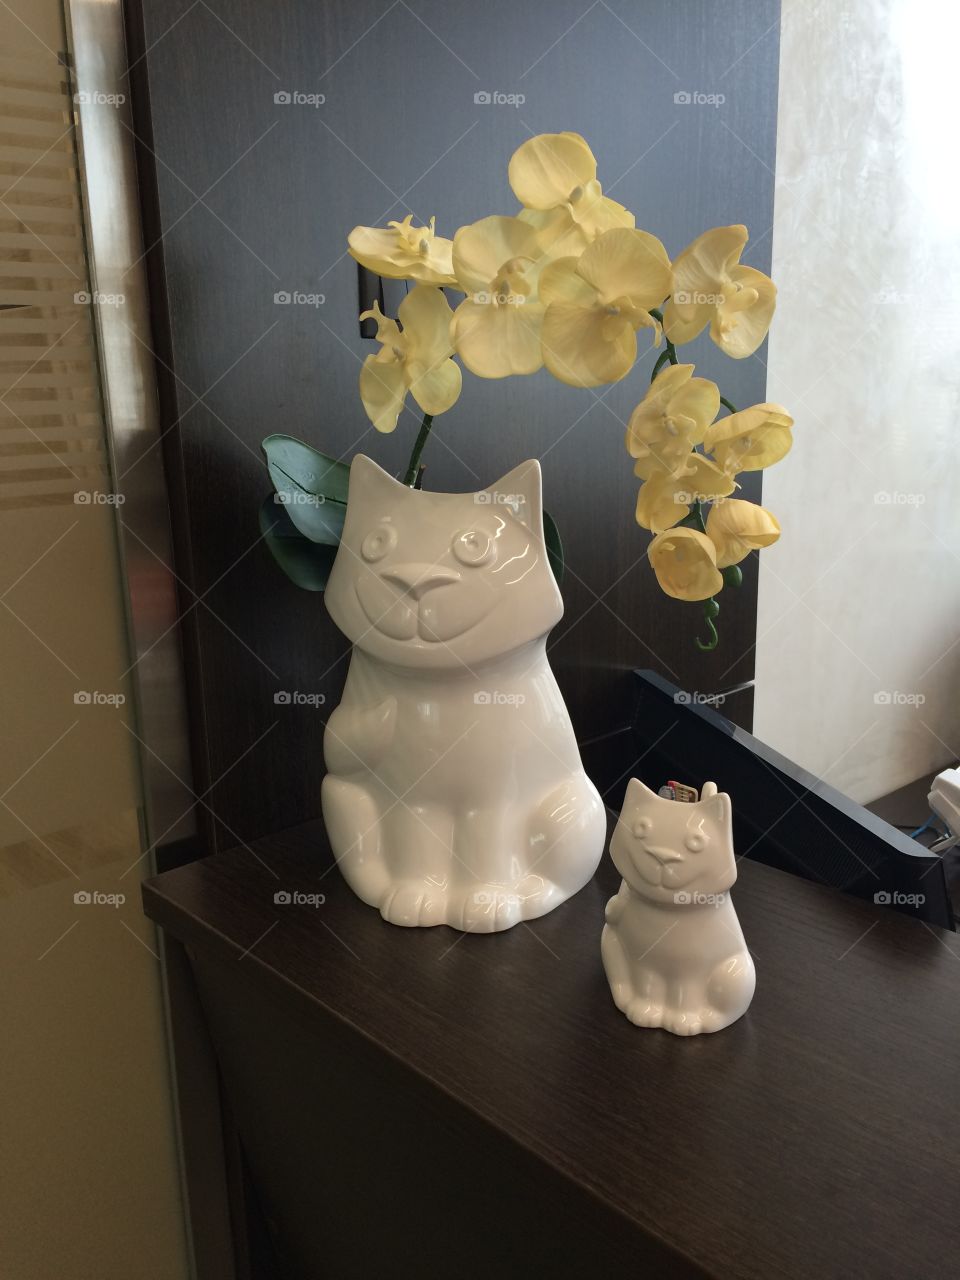 porcelain cats